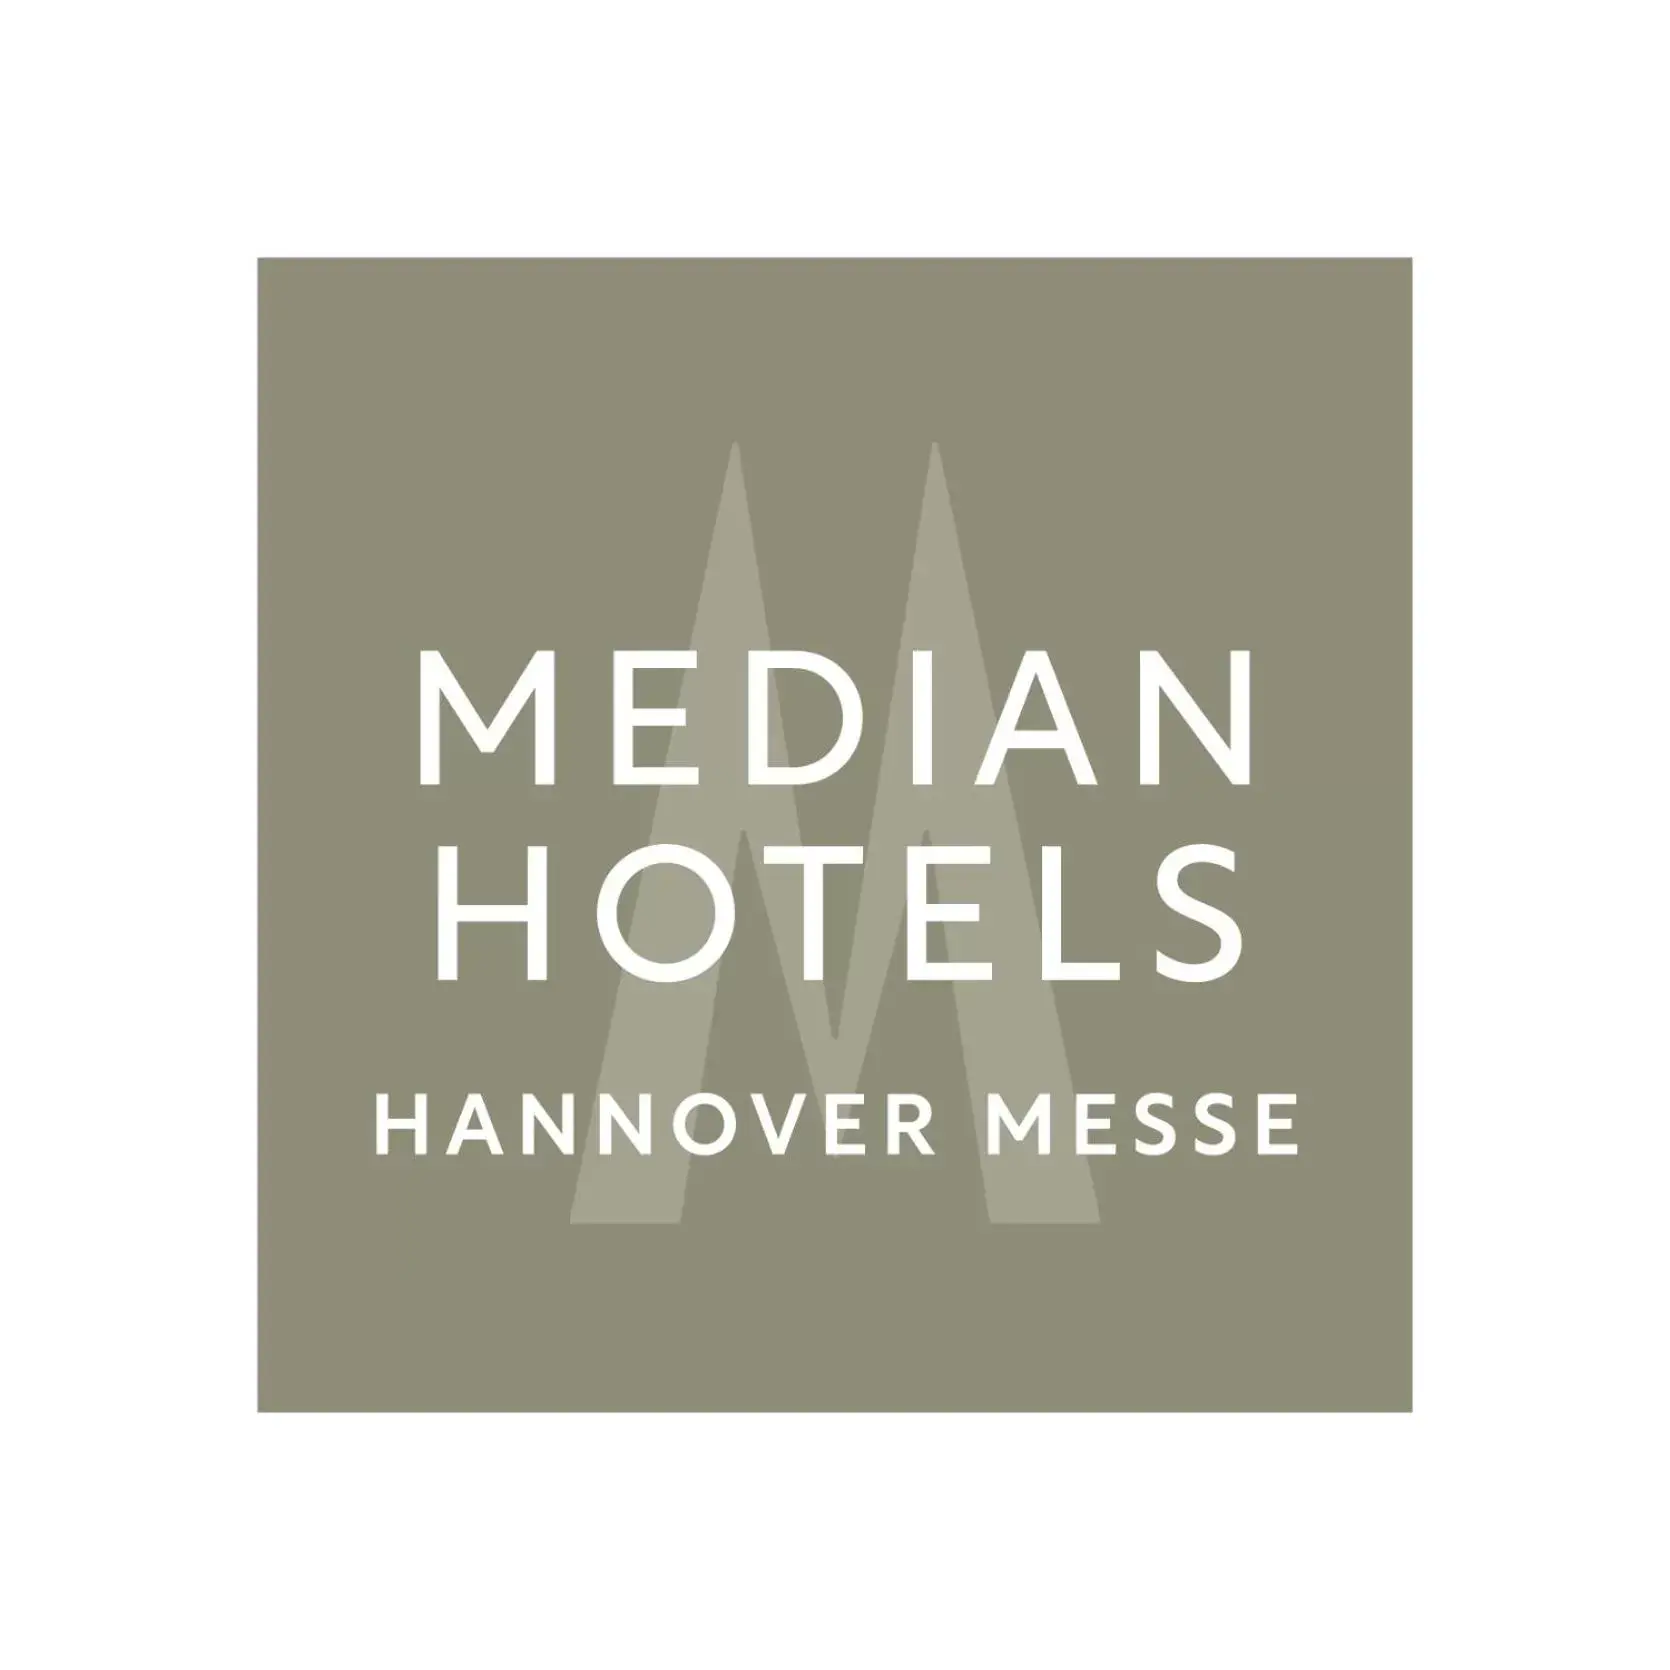 Logo/Certificate/Sign in Median Hotel Hannover Messe